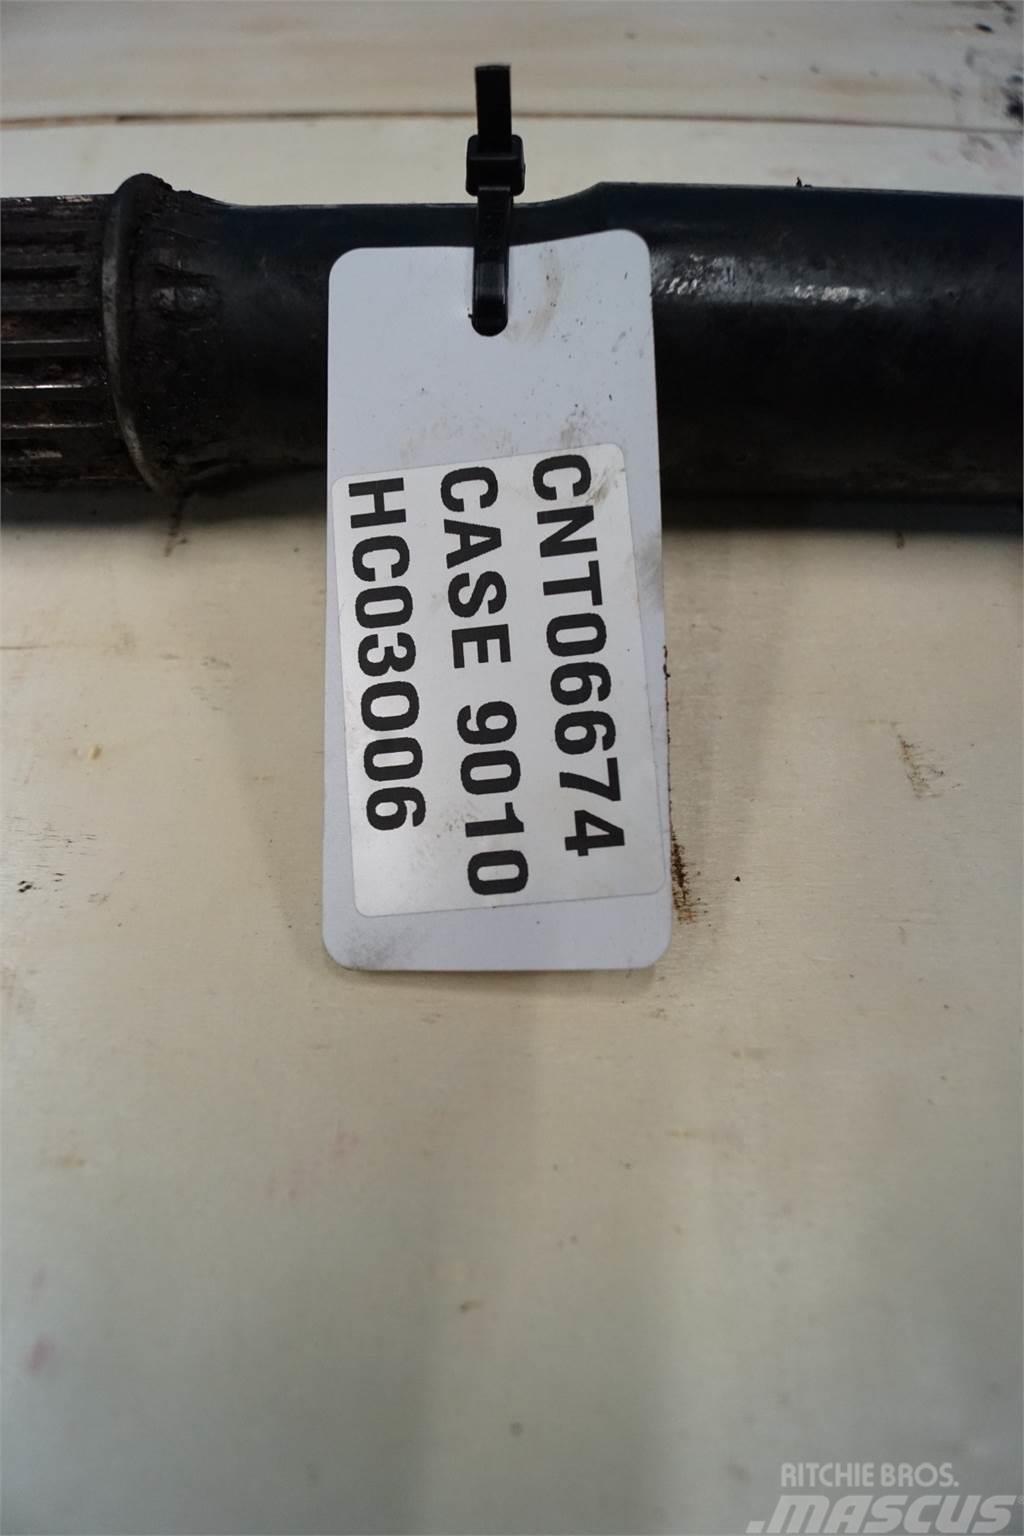 Case IH 9010 Додаткове обладнання для збиральних комбайнів